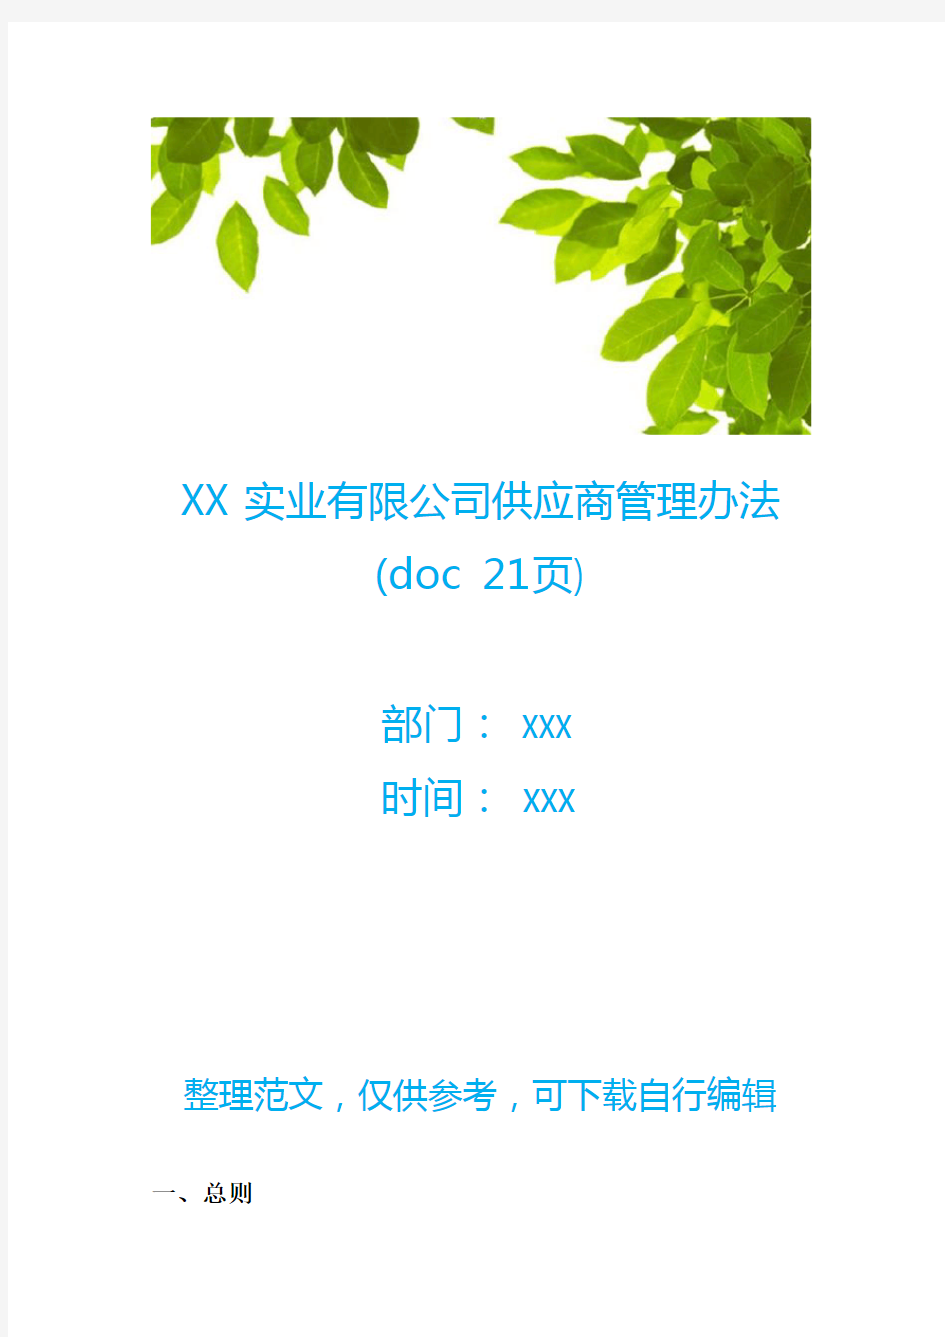 XX实业有限公司供应商管理办法(doc 21页)